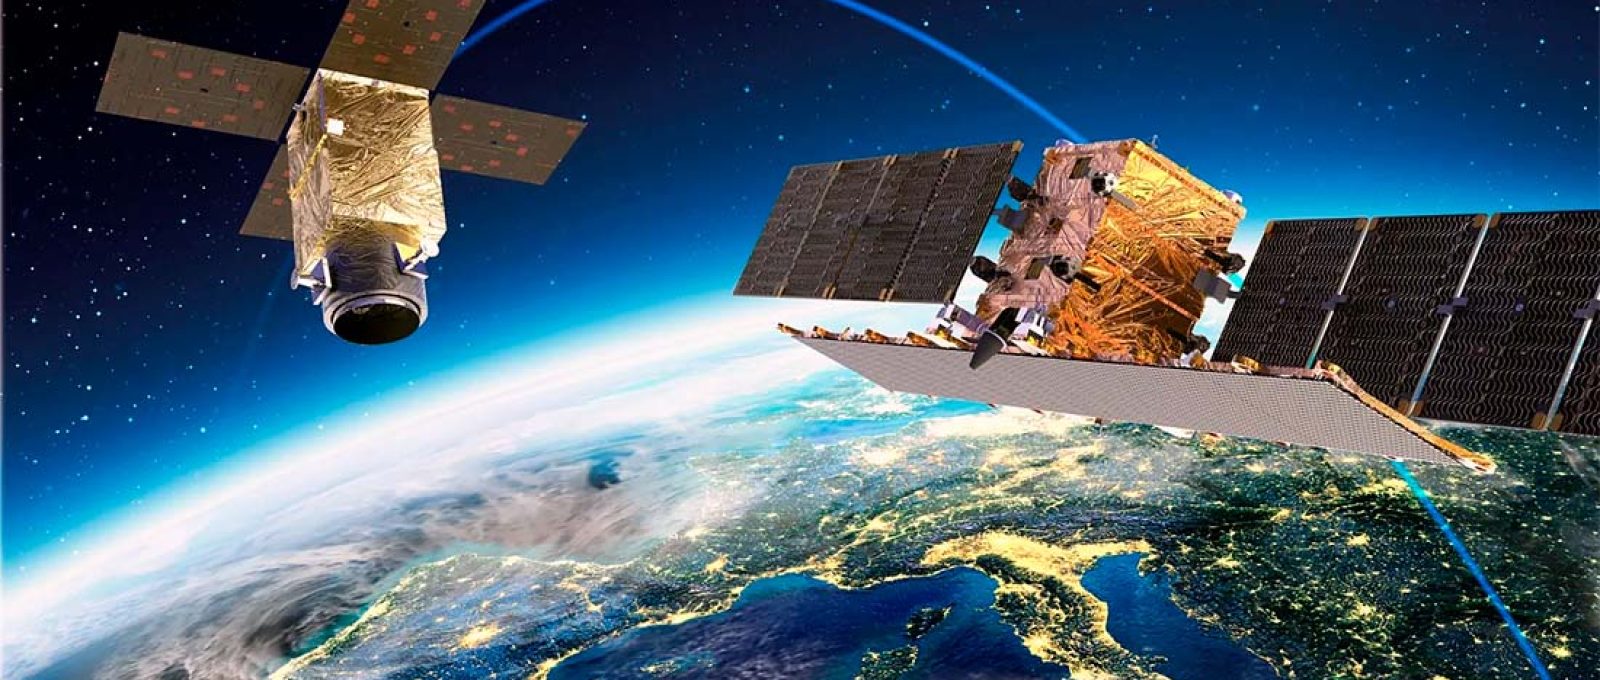 Representação dos satélites ópticos e de radar da Thales Alenia Space para a “constelação de constelações” do IRIDE, International Report for Innovative Defense of Earth (Thales Alenia Space).